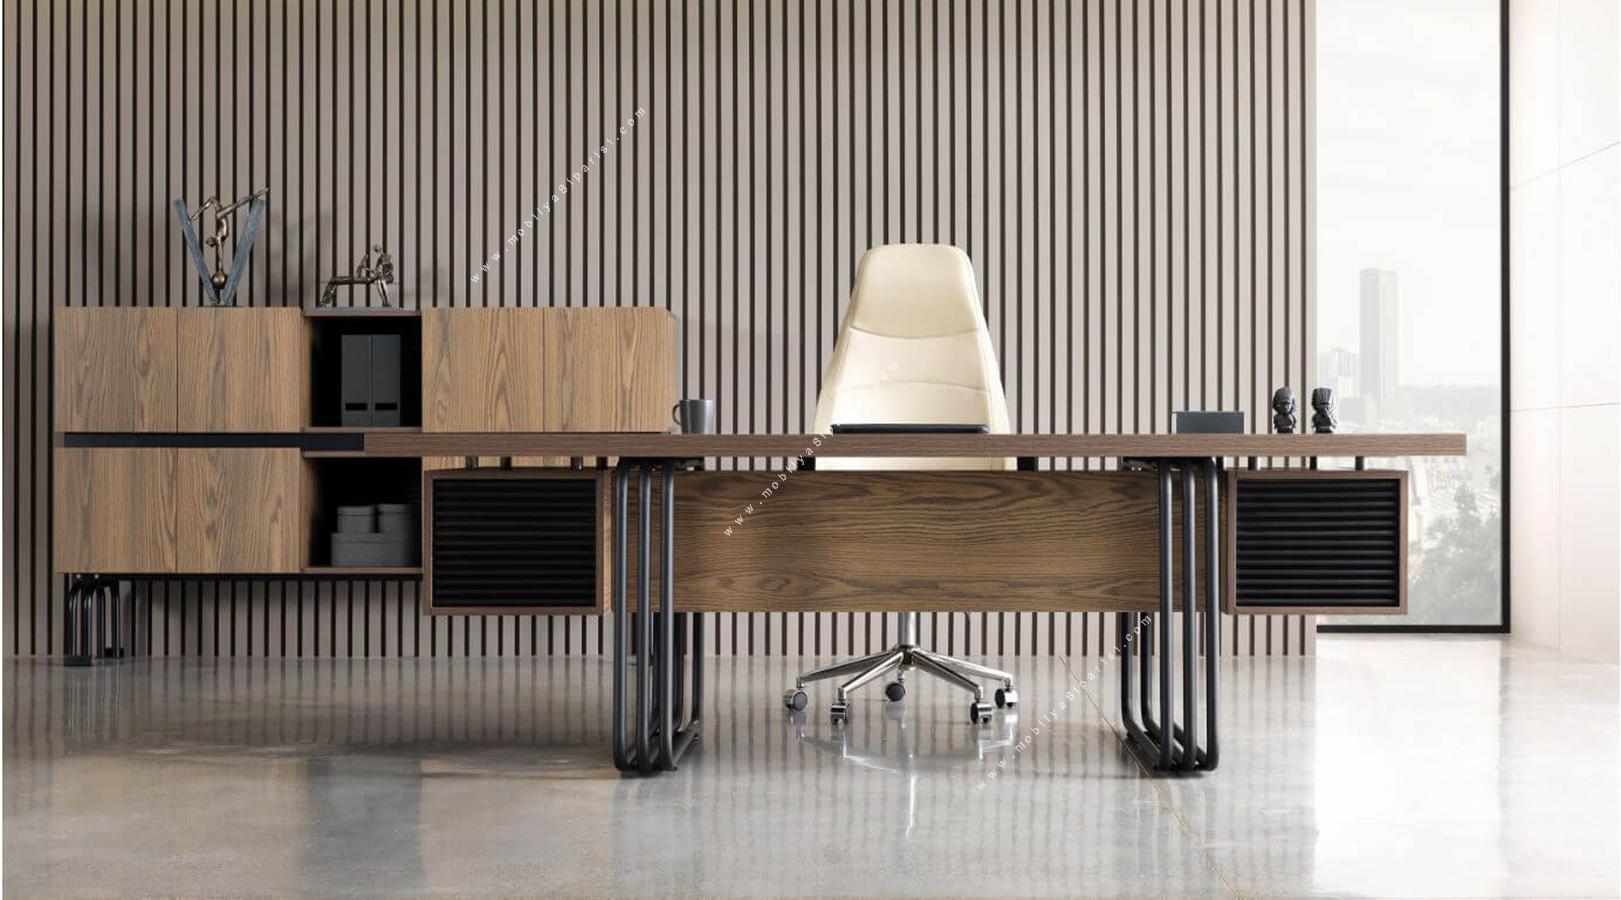 afro metal ayaklı makam ofis mobilyası